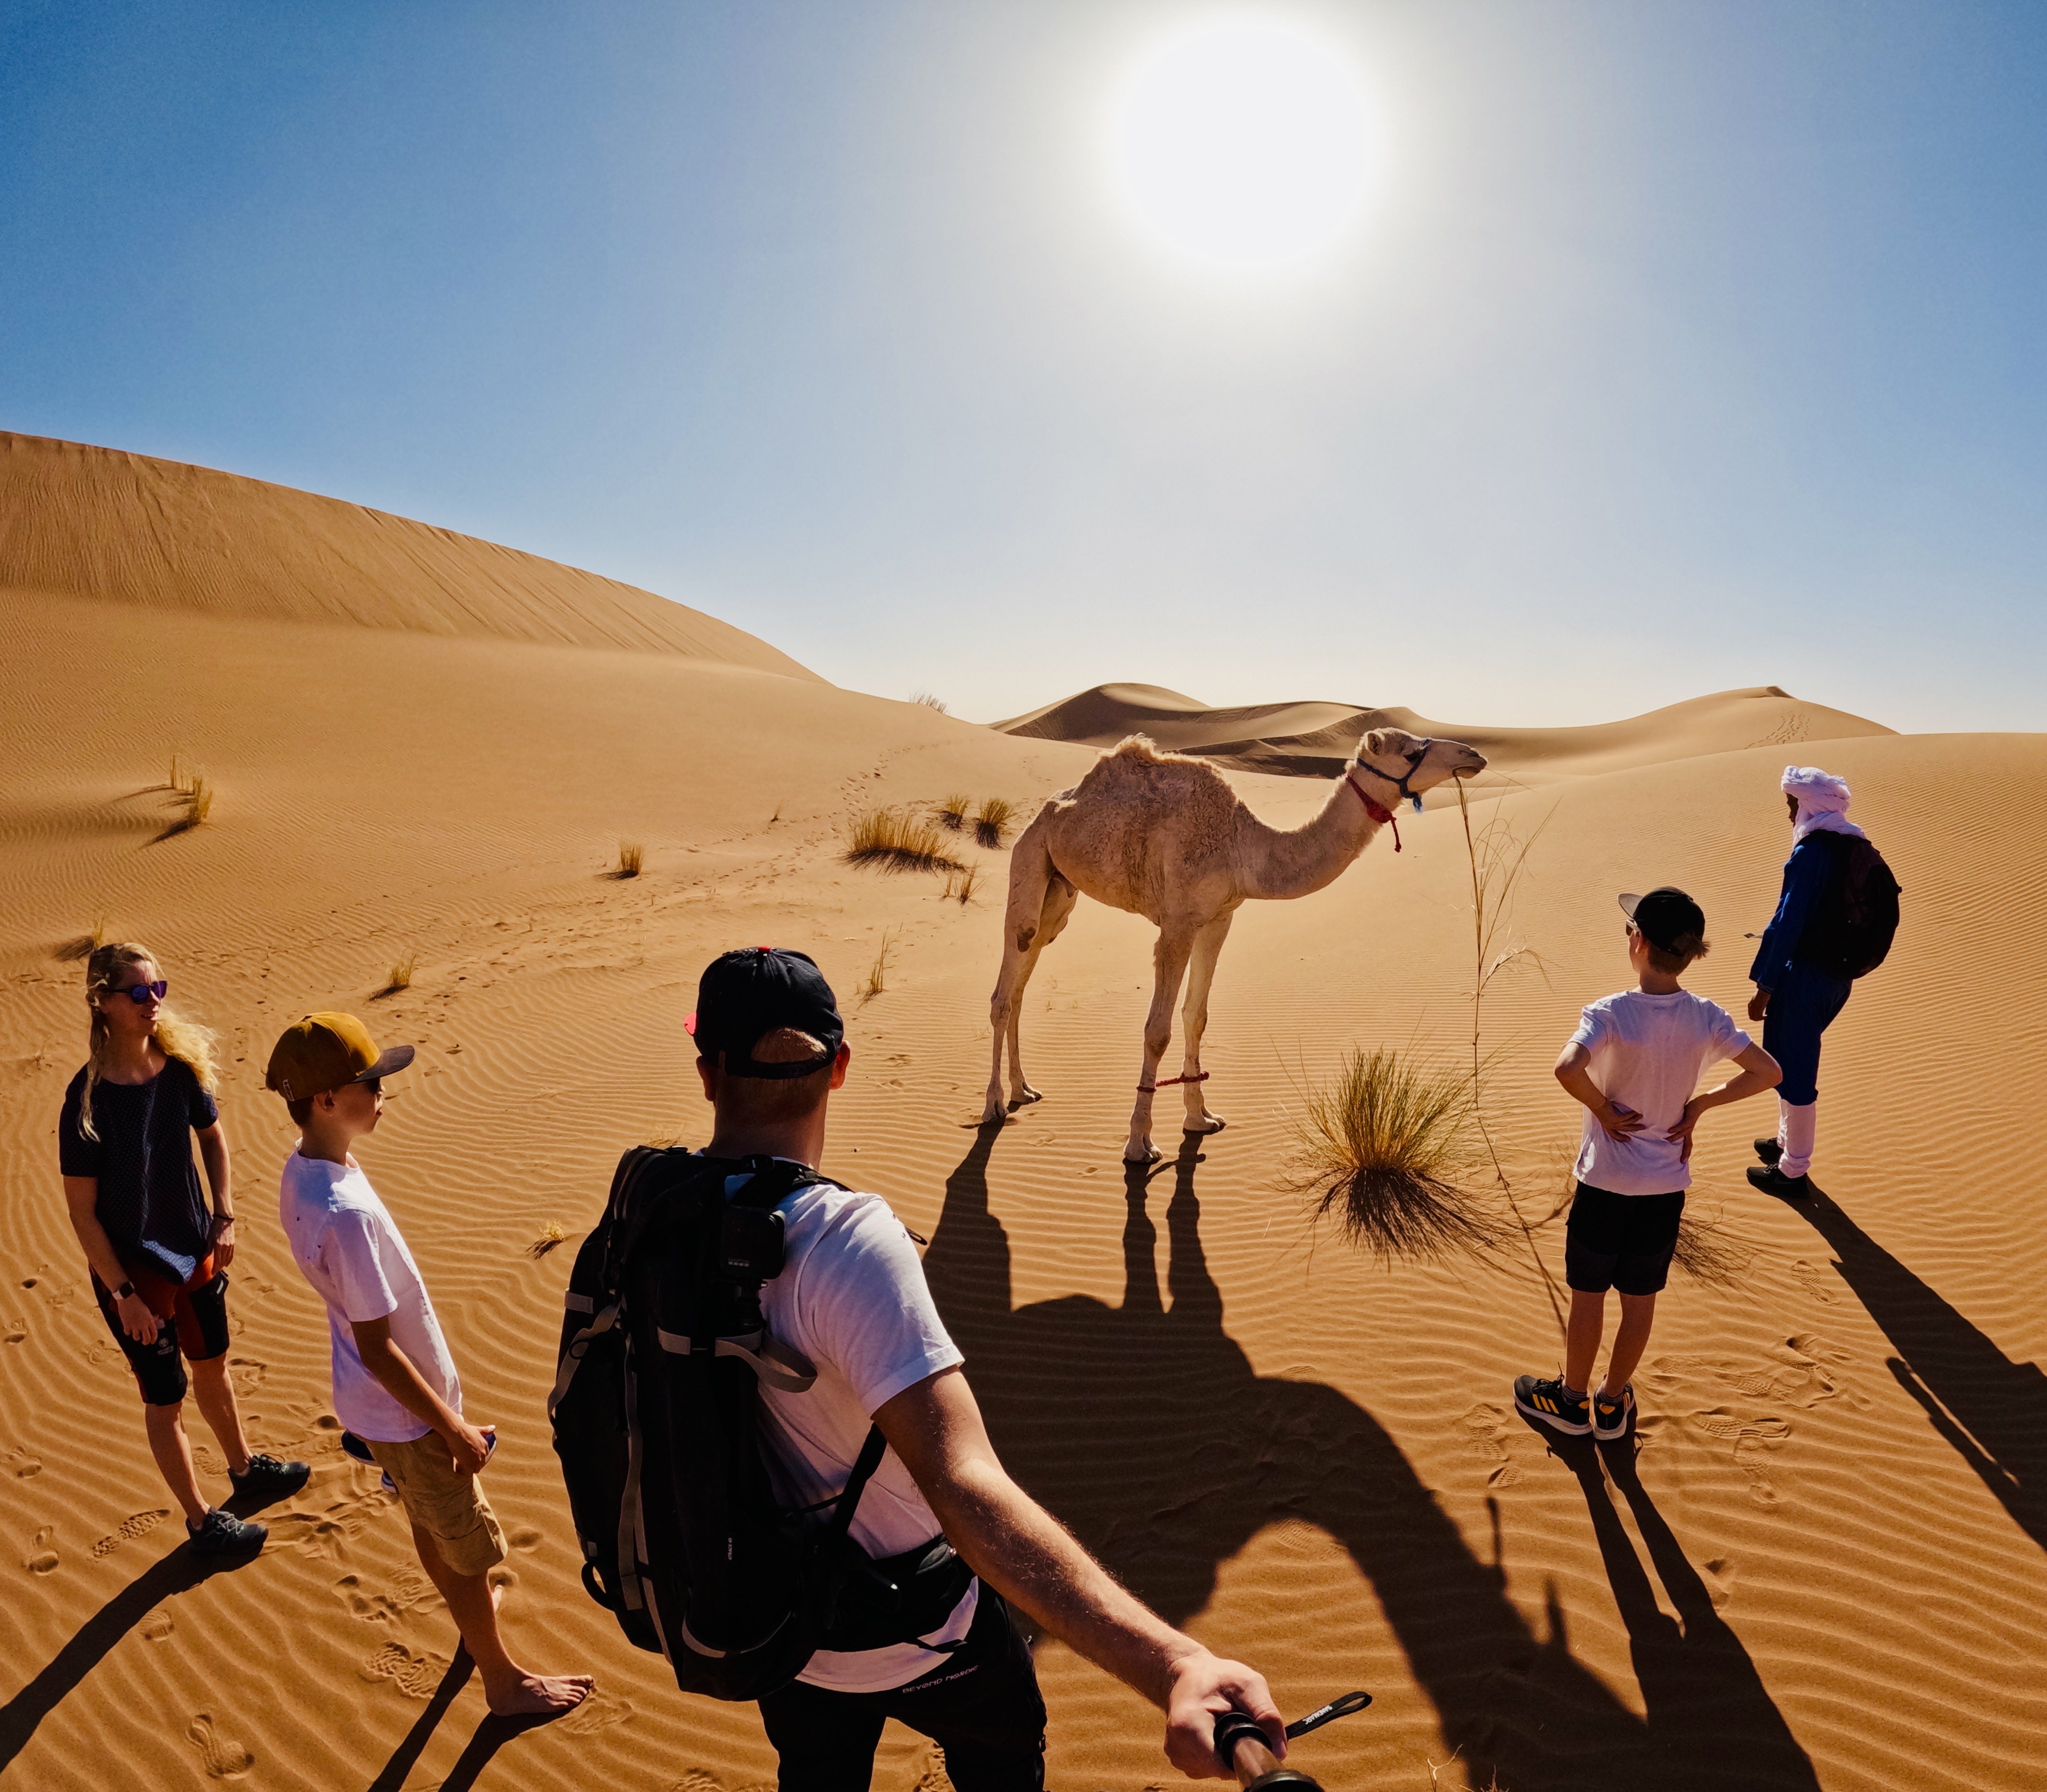 Urlaub mit Jugendlichen - Urlaub mit pubertierenden Kindern - Reiseziele für Jugendliche - Aktivurlaub mit Teenagern - Marokko Wüstentrekking